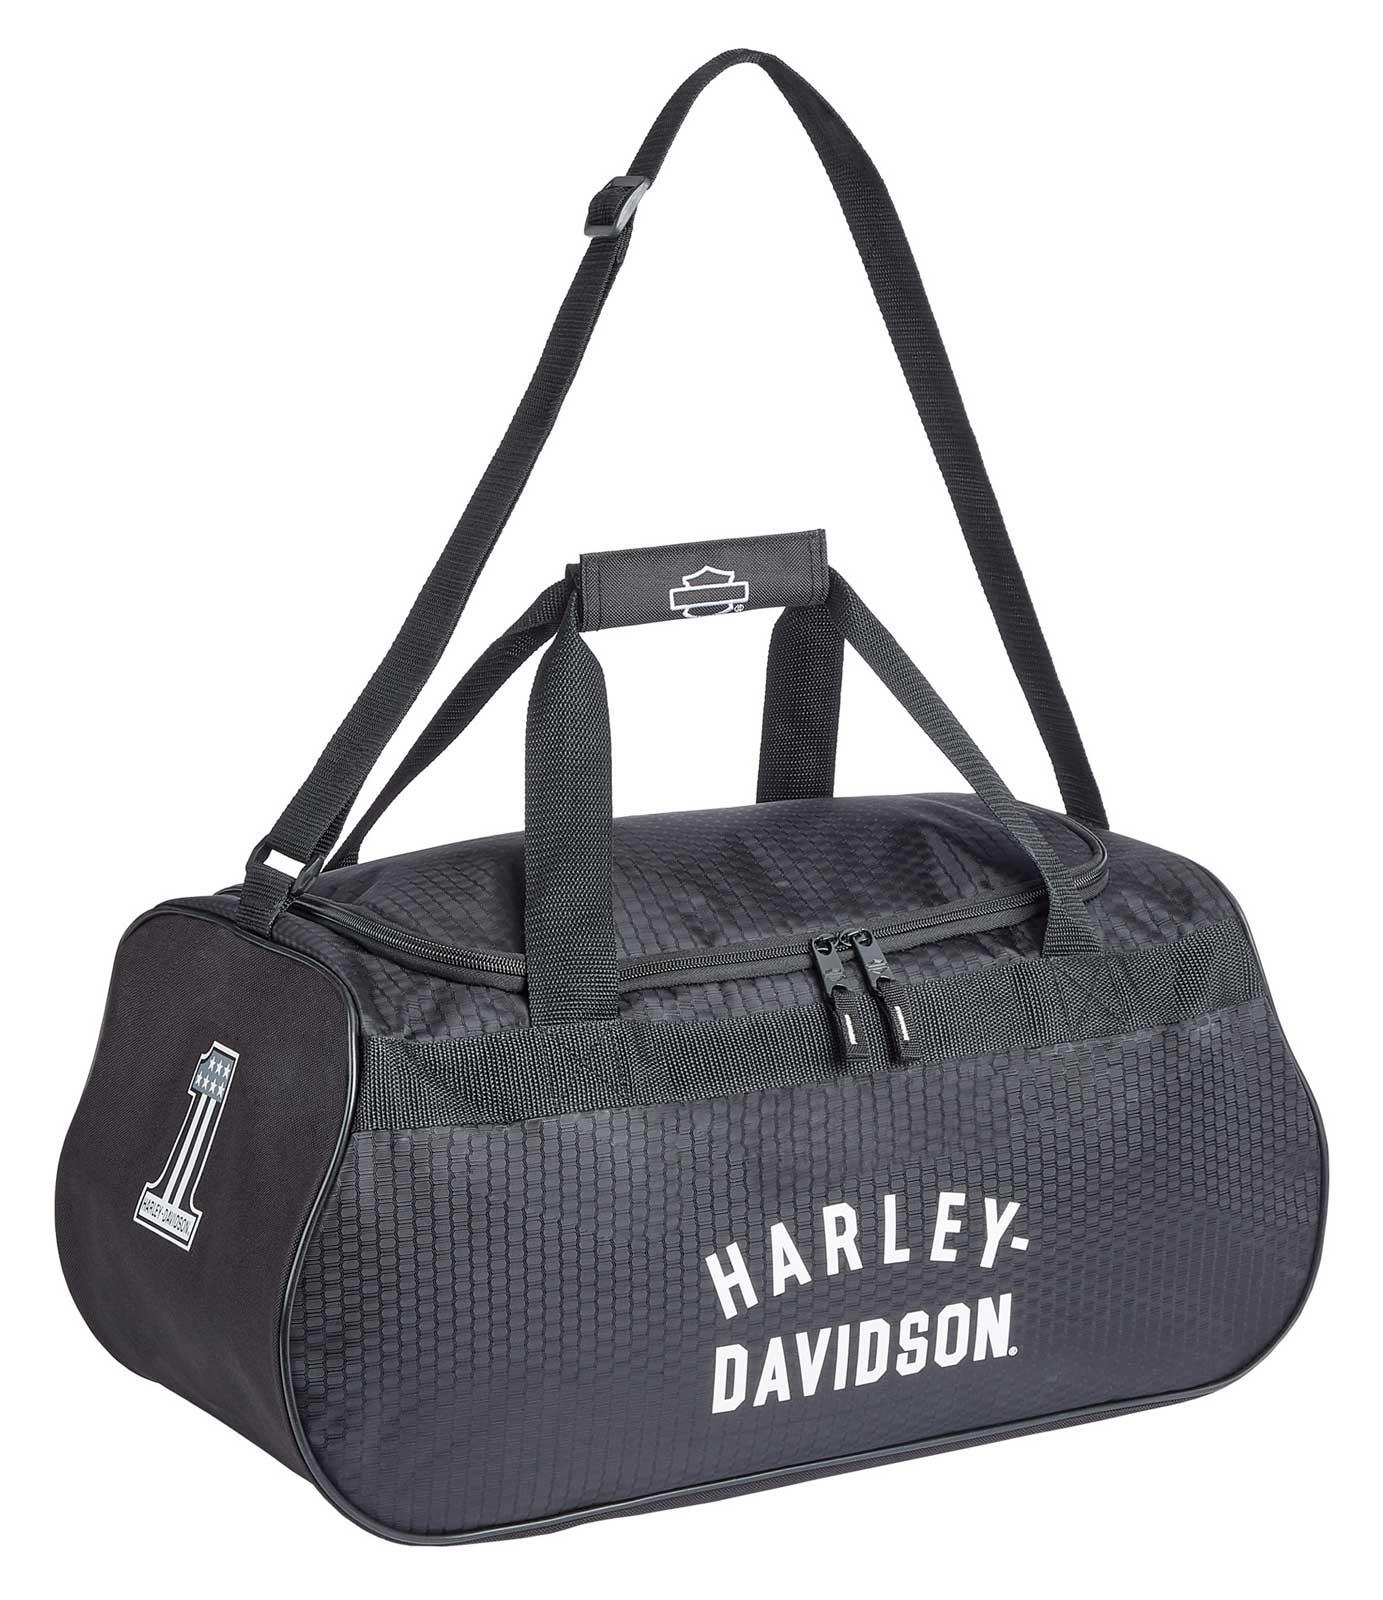 HARLEY DAVIDSON One-shoulder Bag Black, Bags